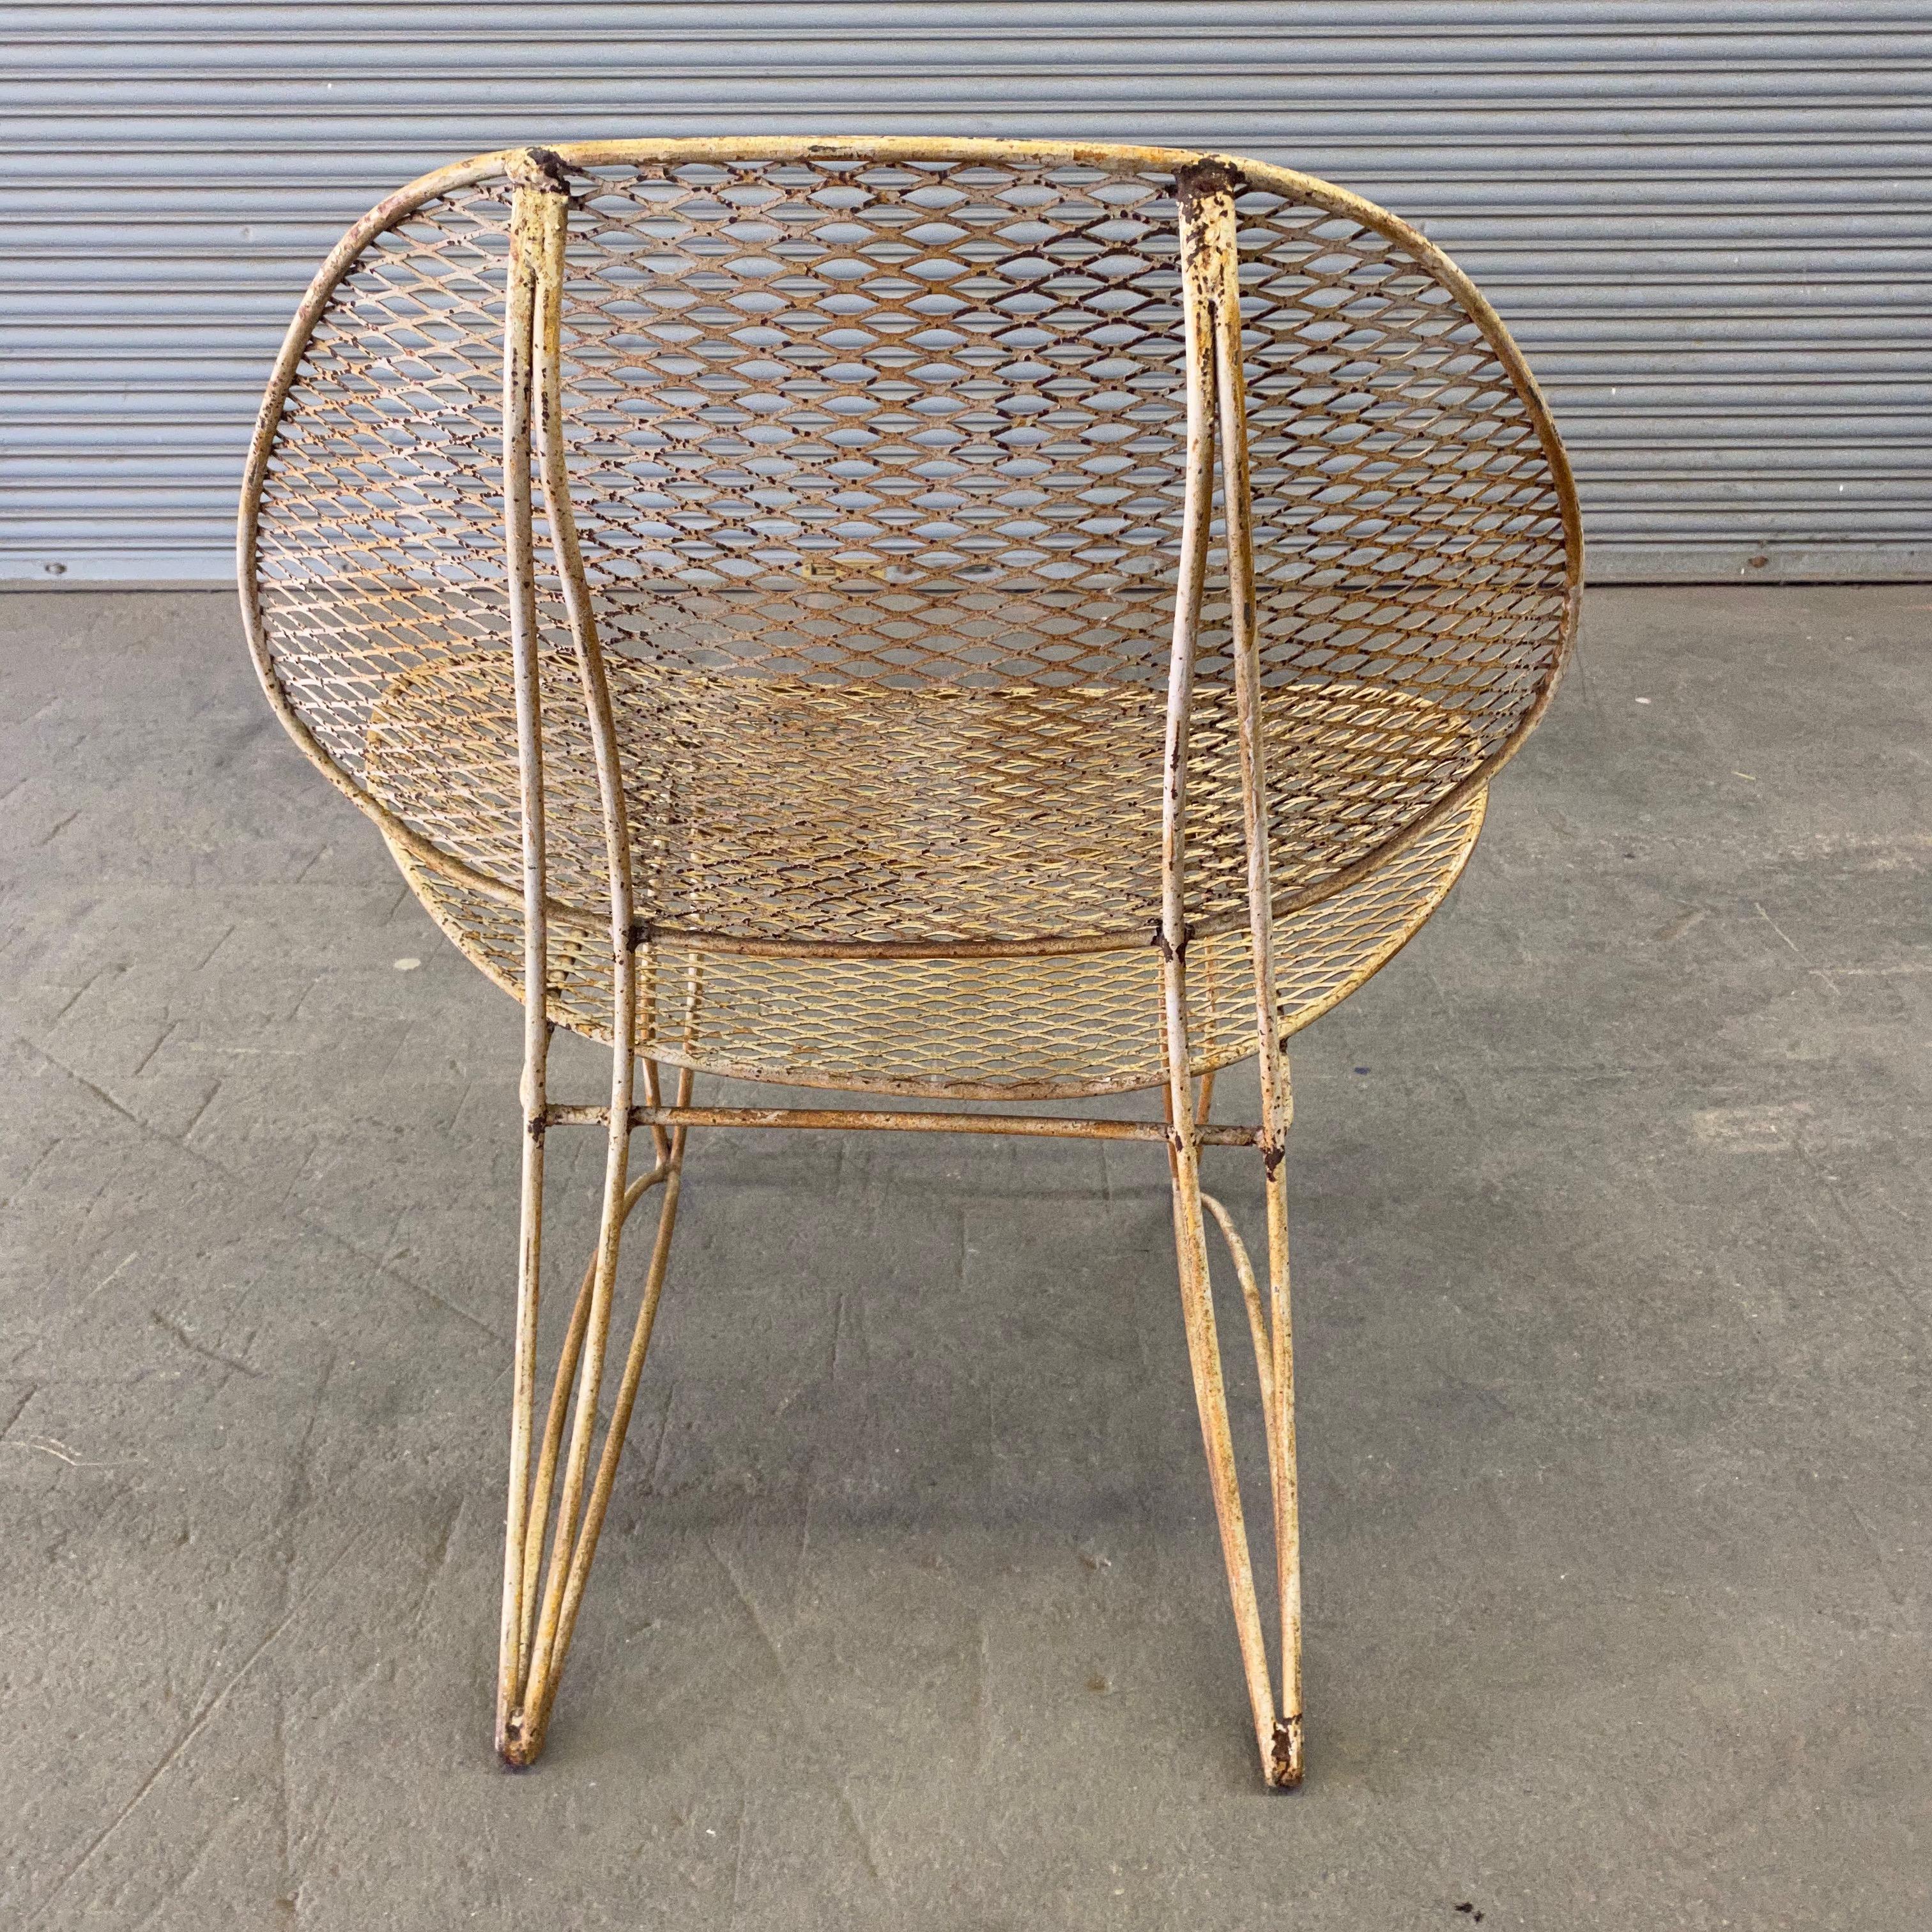 Vintage Iron Garden Chair 1